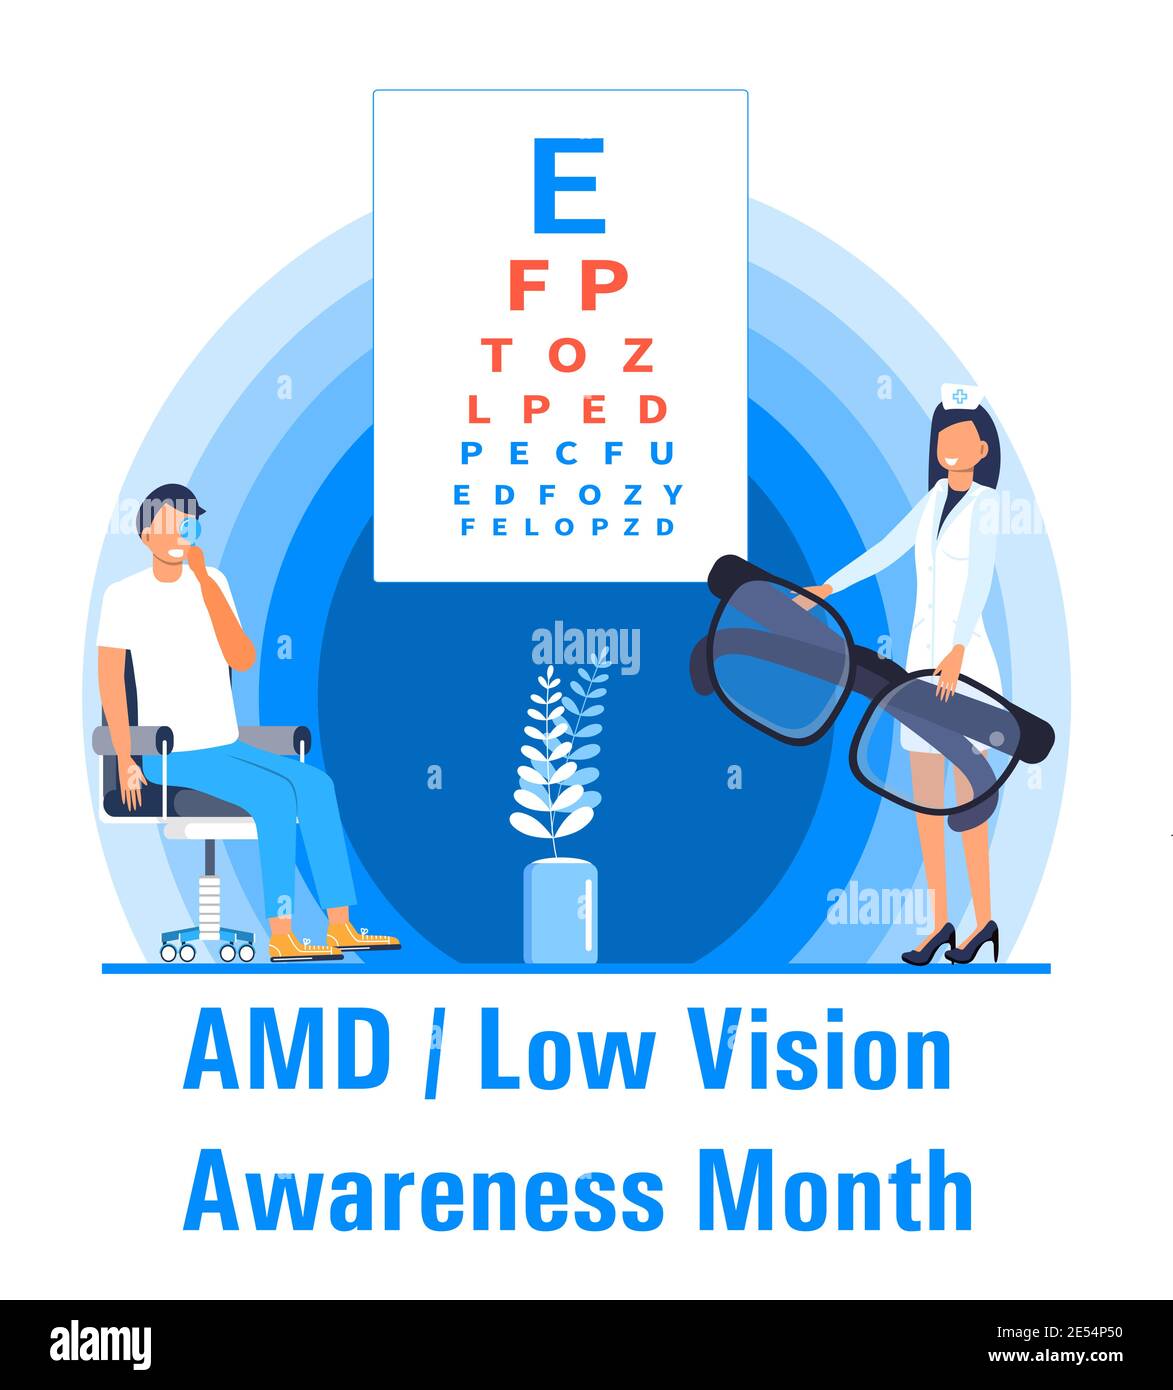 AMD, Low Vision Awareness Monat Veranstaltung wird im Februar gefeiert. Medizinischer Augenarzt Augenlicht Check up Konzeptvektor. Augenarzt Illustration für Stock Vektor